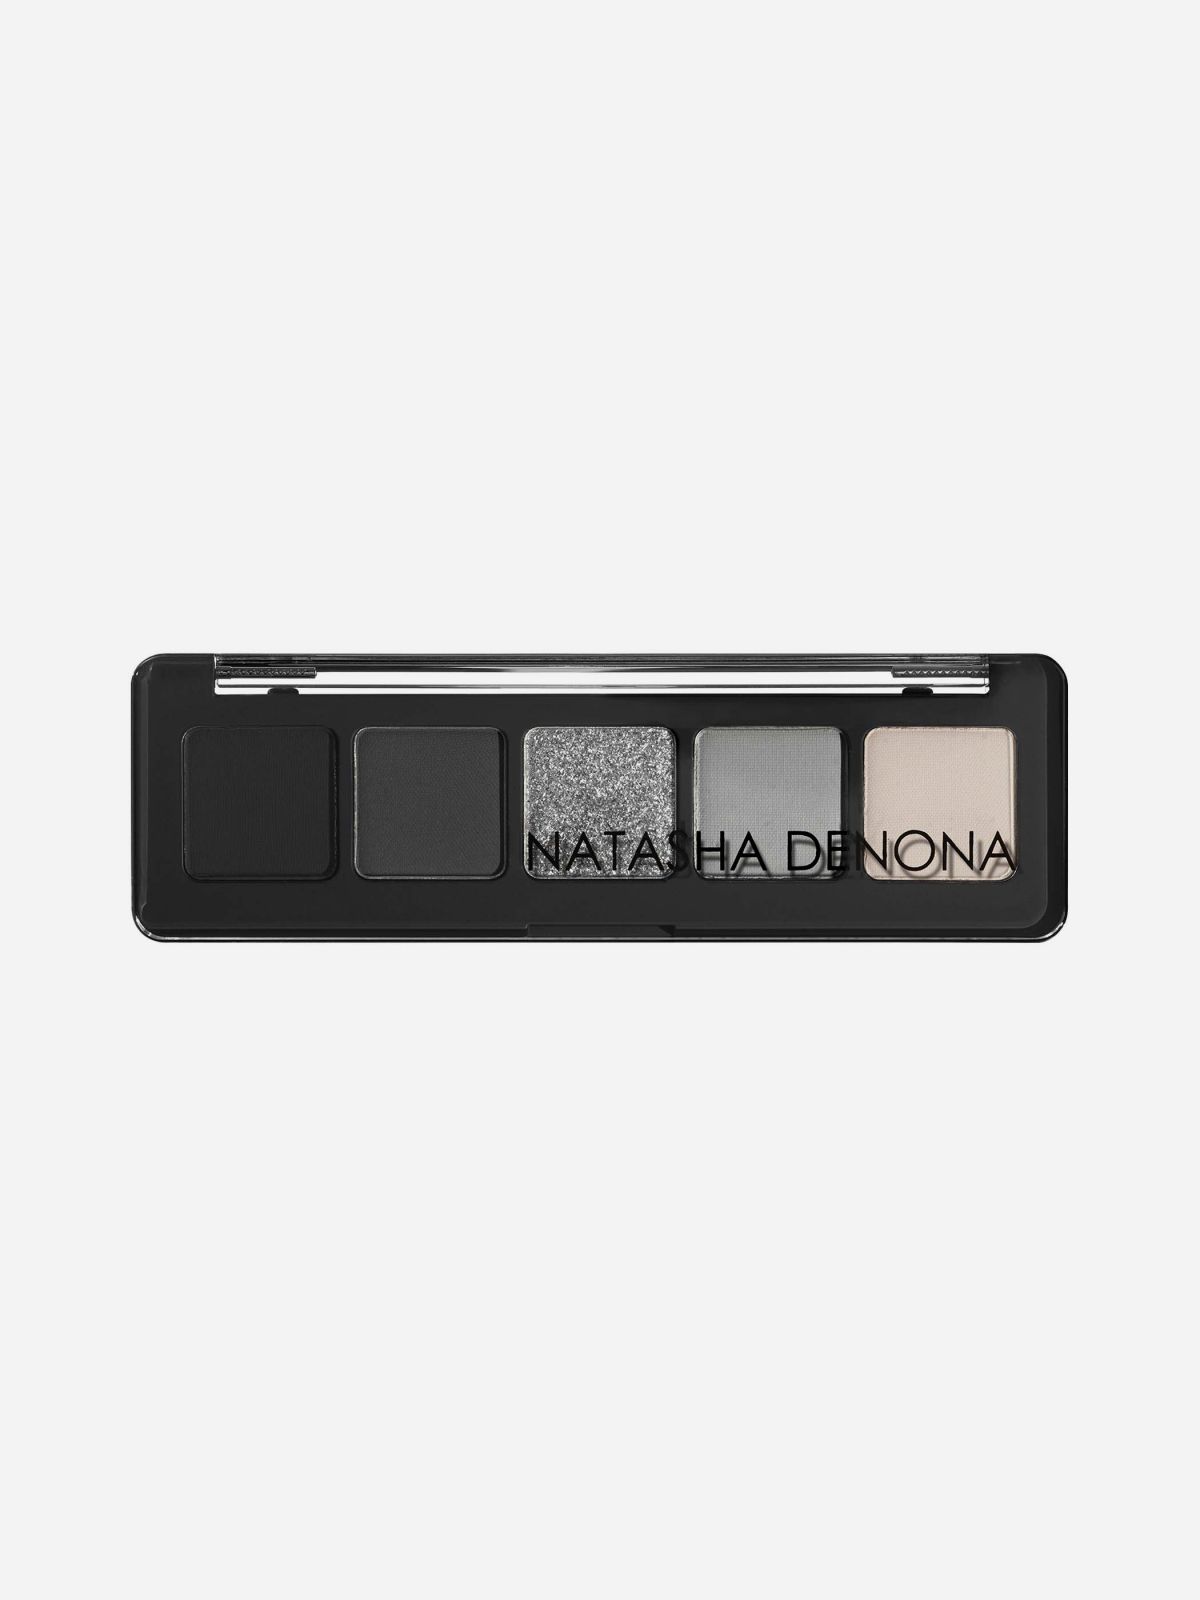  פלטת צלליות לעיניים בגודל מיני Mini Xenon Eyeshadow Palette של NATASHA DENONA